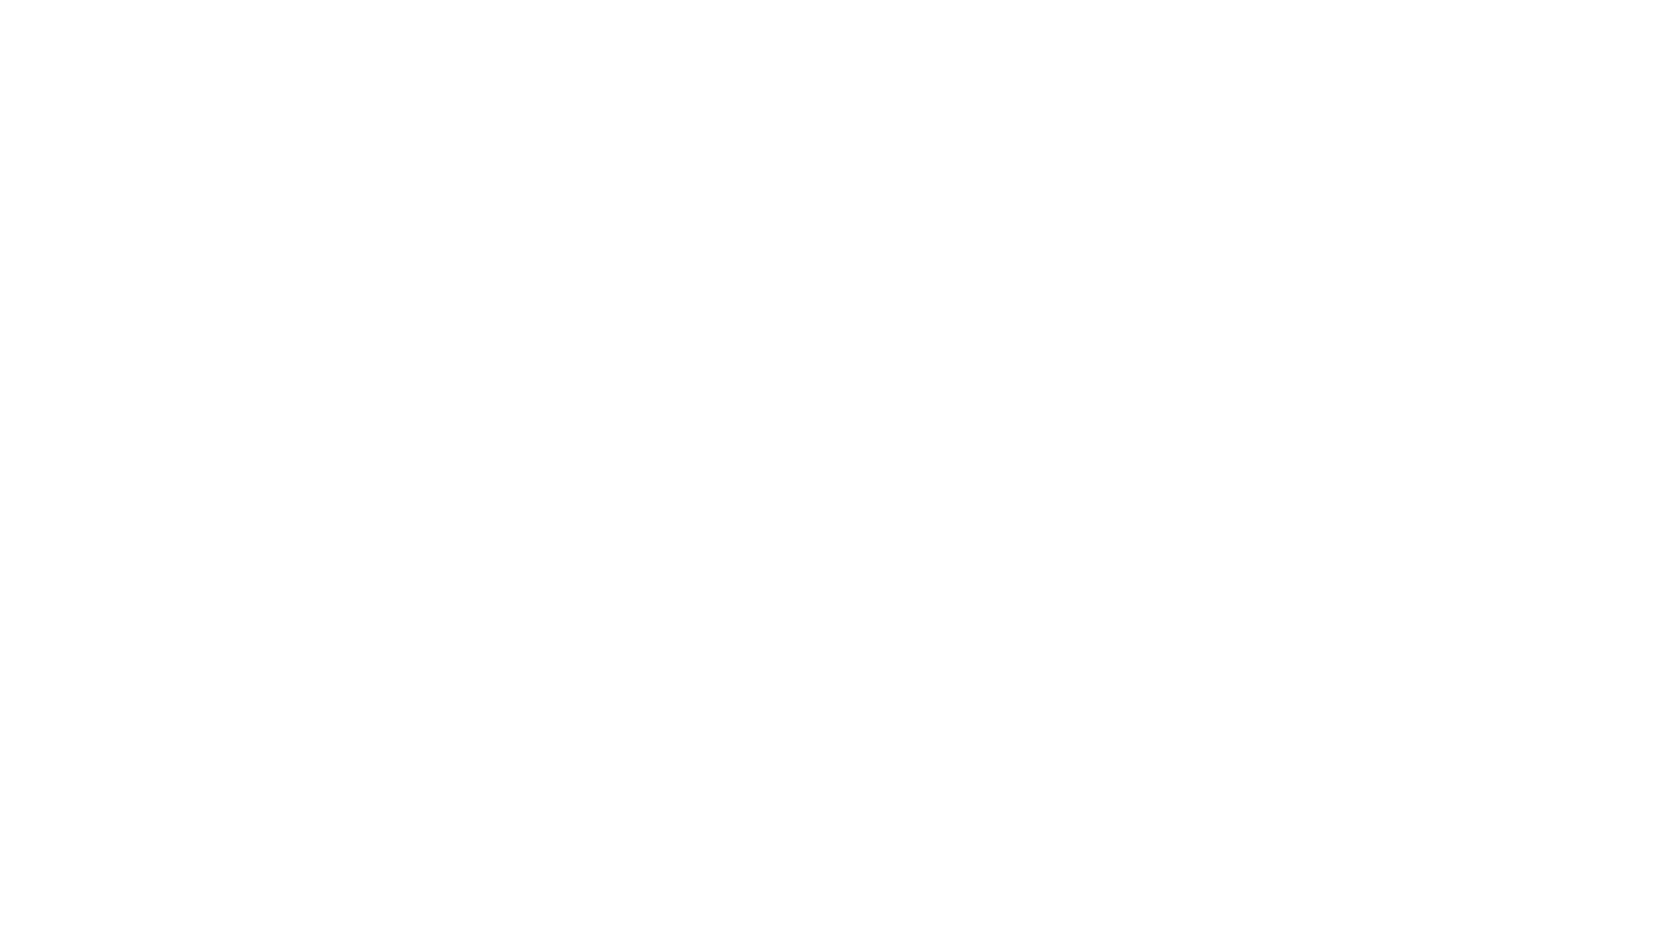 Интерфейс окна чата Beesender и фирменная сота-иконка показаны на примере мобильного оператора.